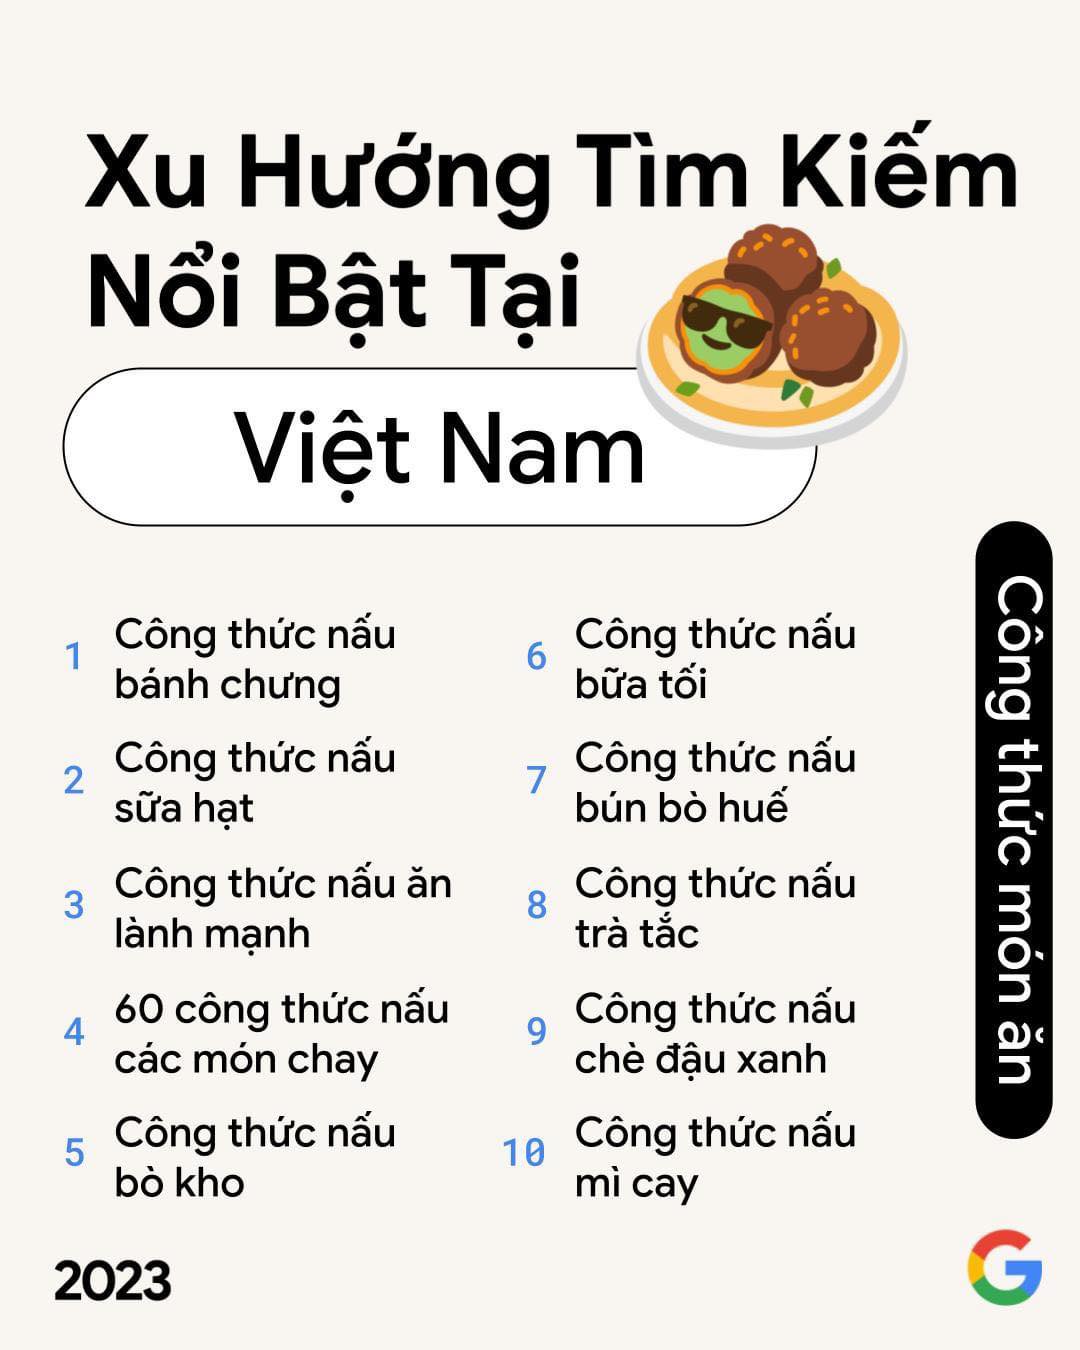 Công thức nấu ăn được quan tâm tìm kiếm của người Việt trên Google năm nay